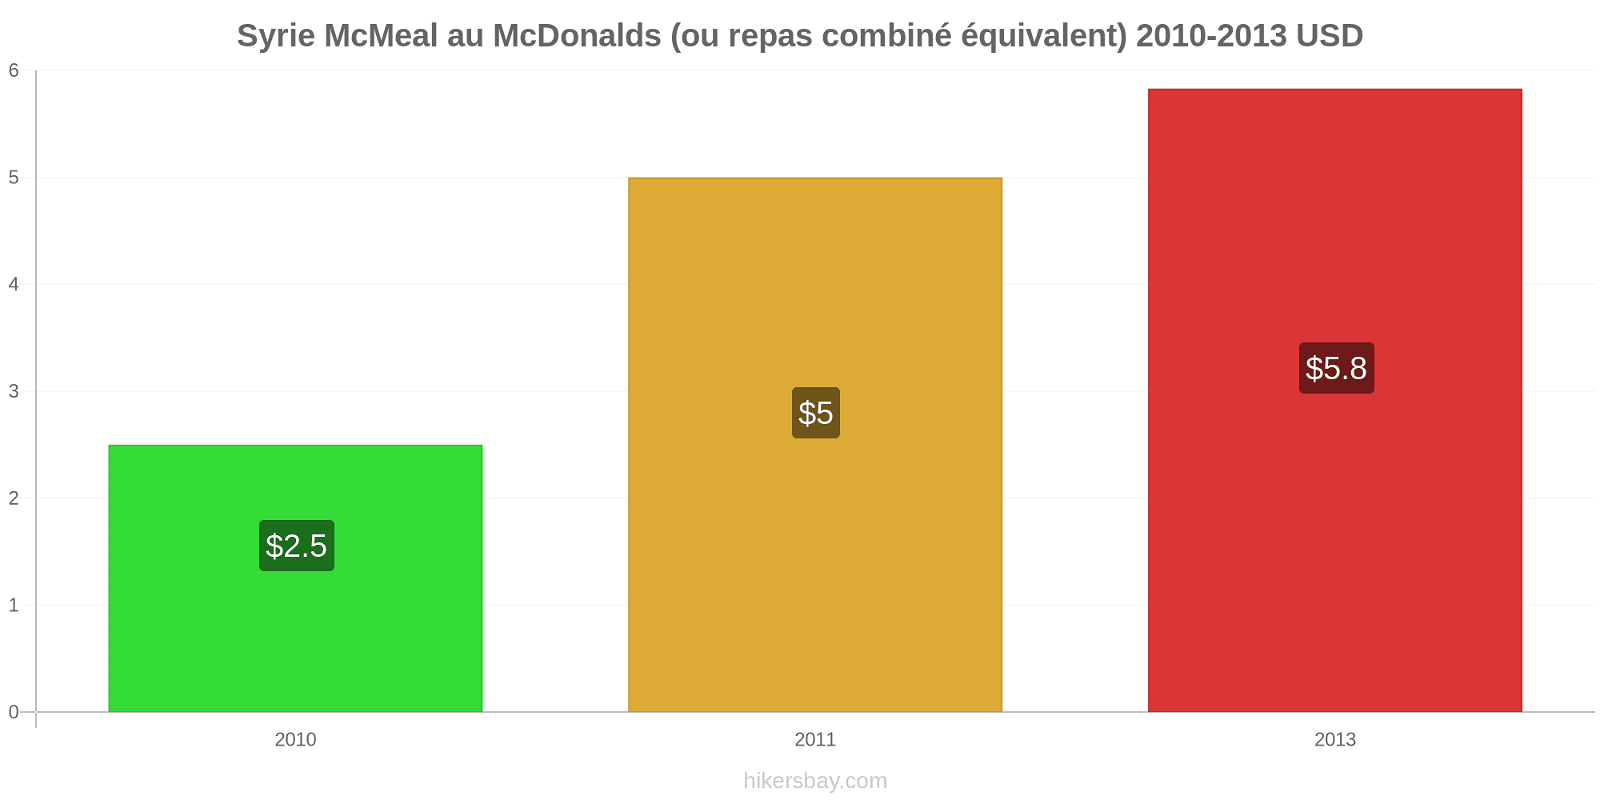 Syrie changements de prix McMeal à McDonald ' s (ou Combo équivalent tourteau) hikersbay.com